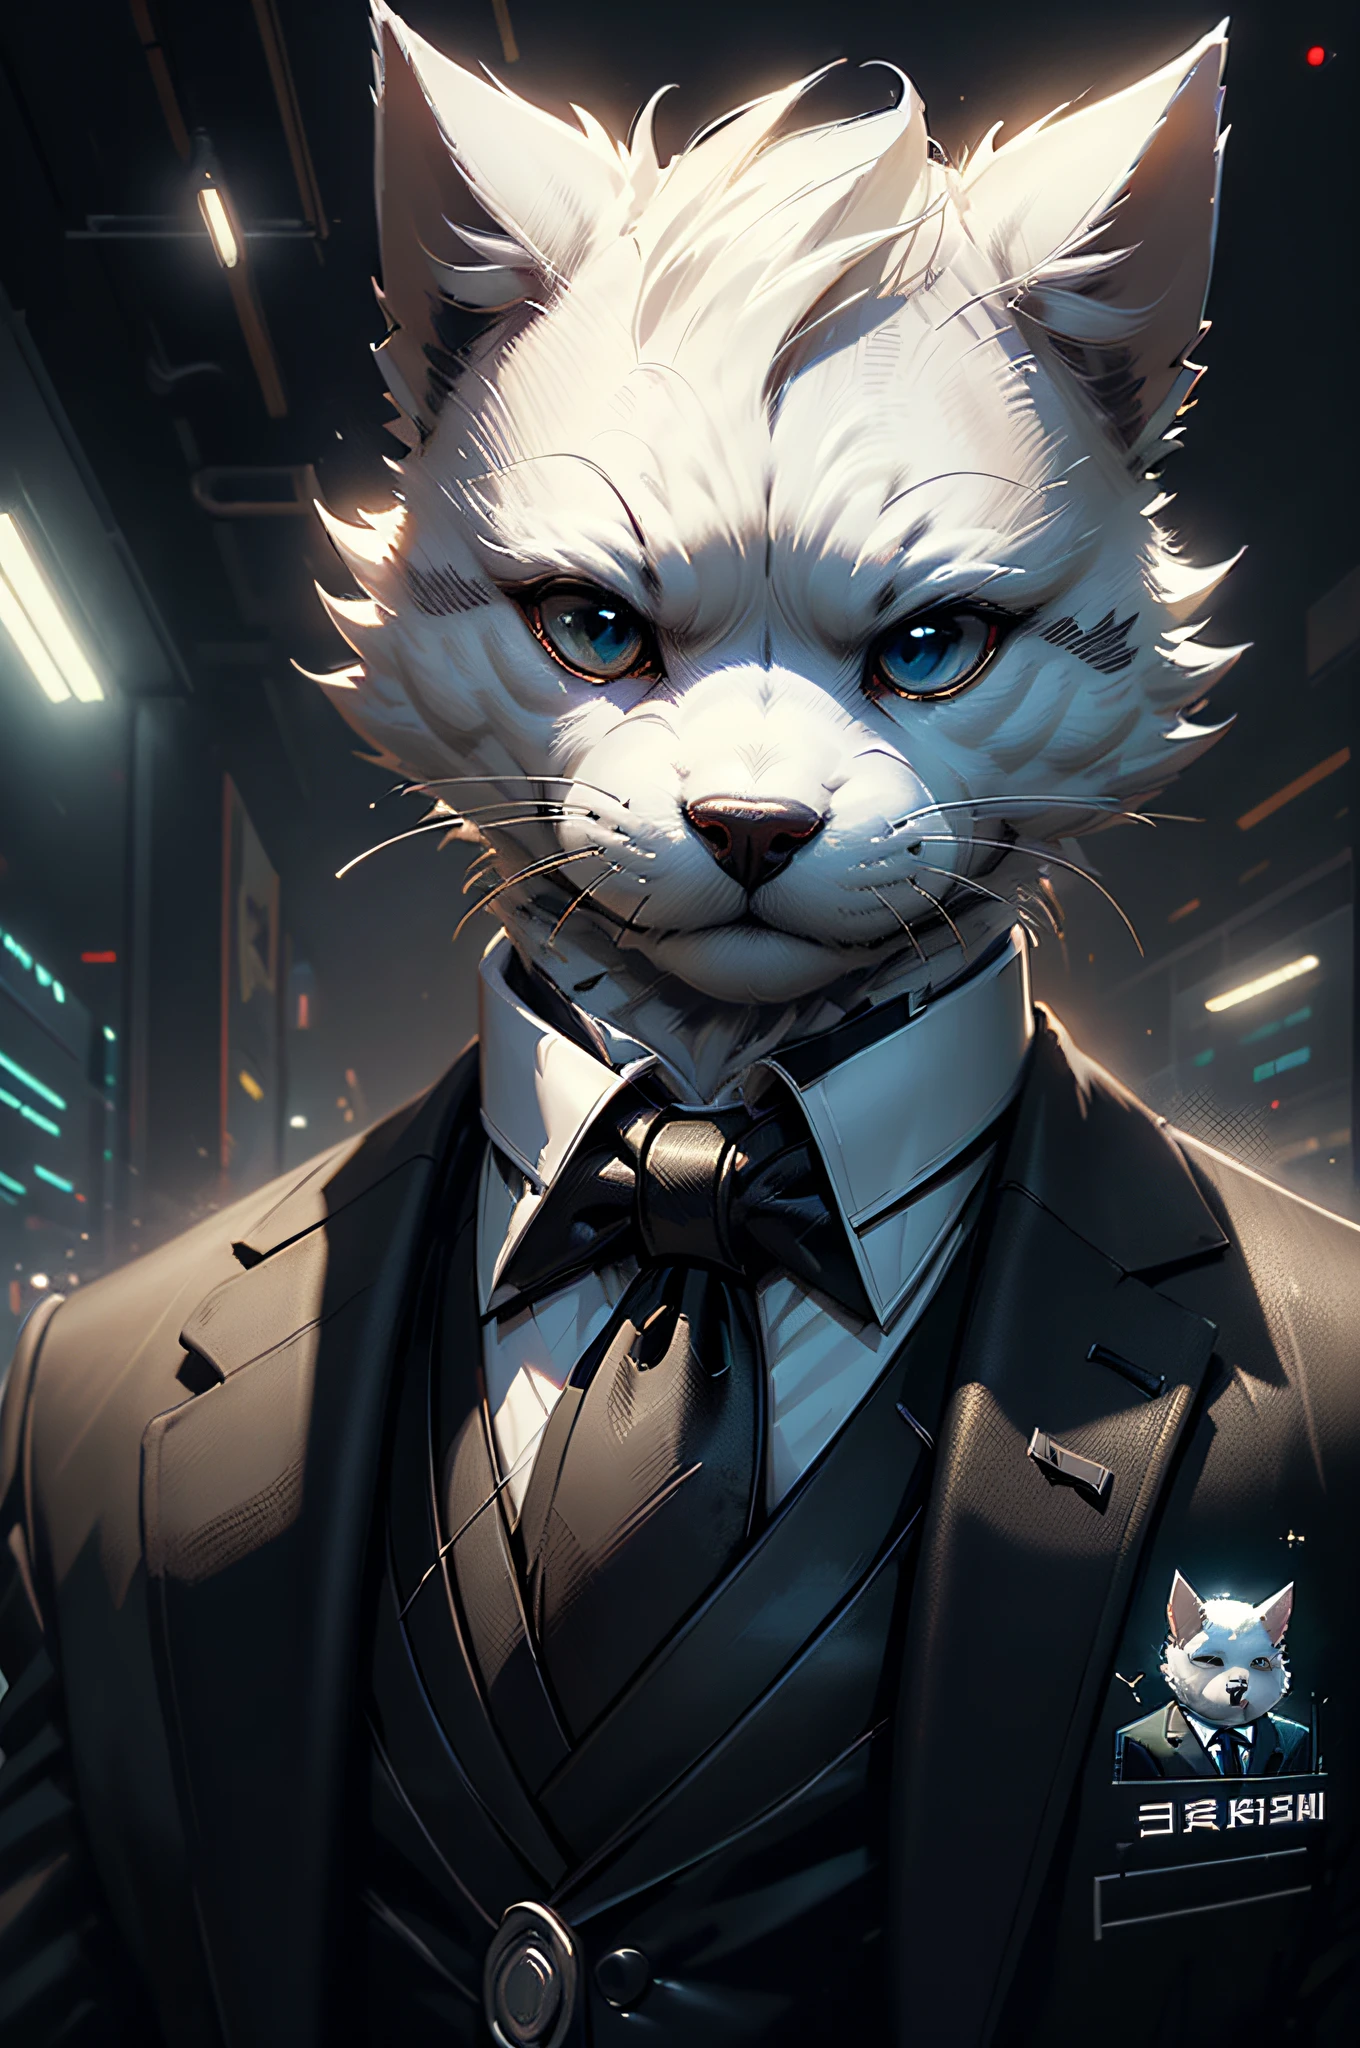 (Homme en costume noir et cravate)Bande dessinée、Chien terrier blanc anthropomorphe、cyberpunk